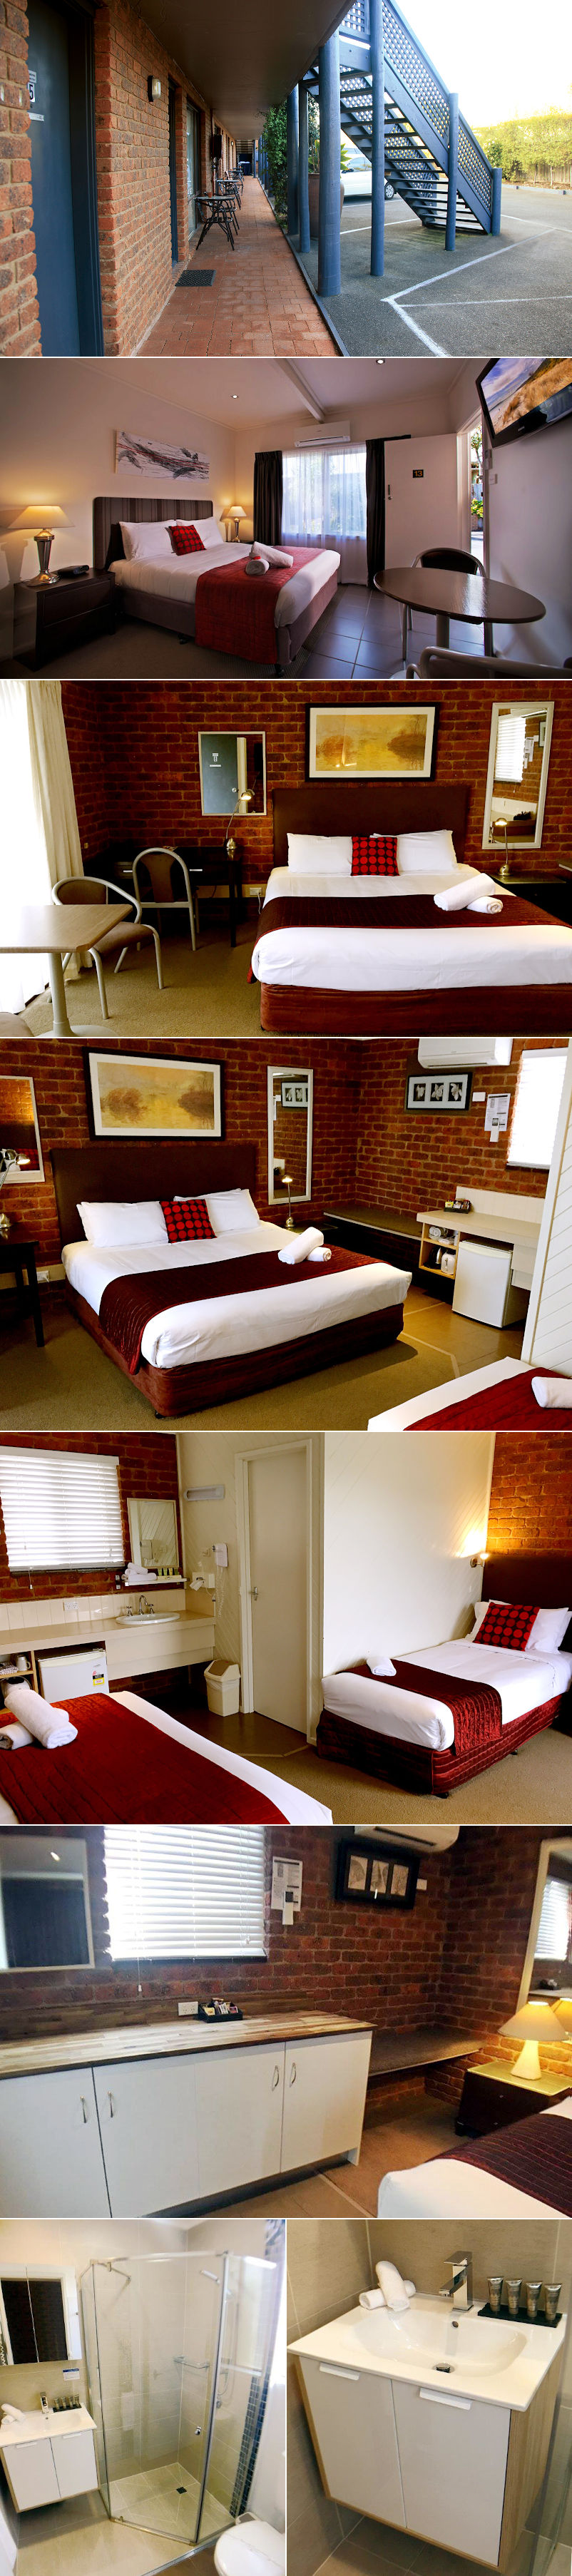 Admiral Motor Inn - Motel rooms